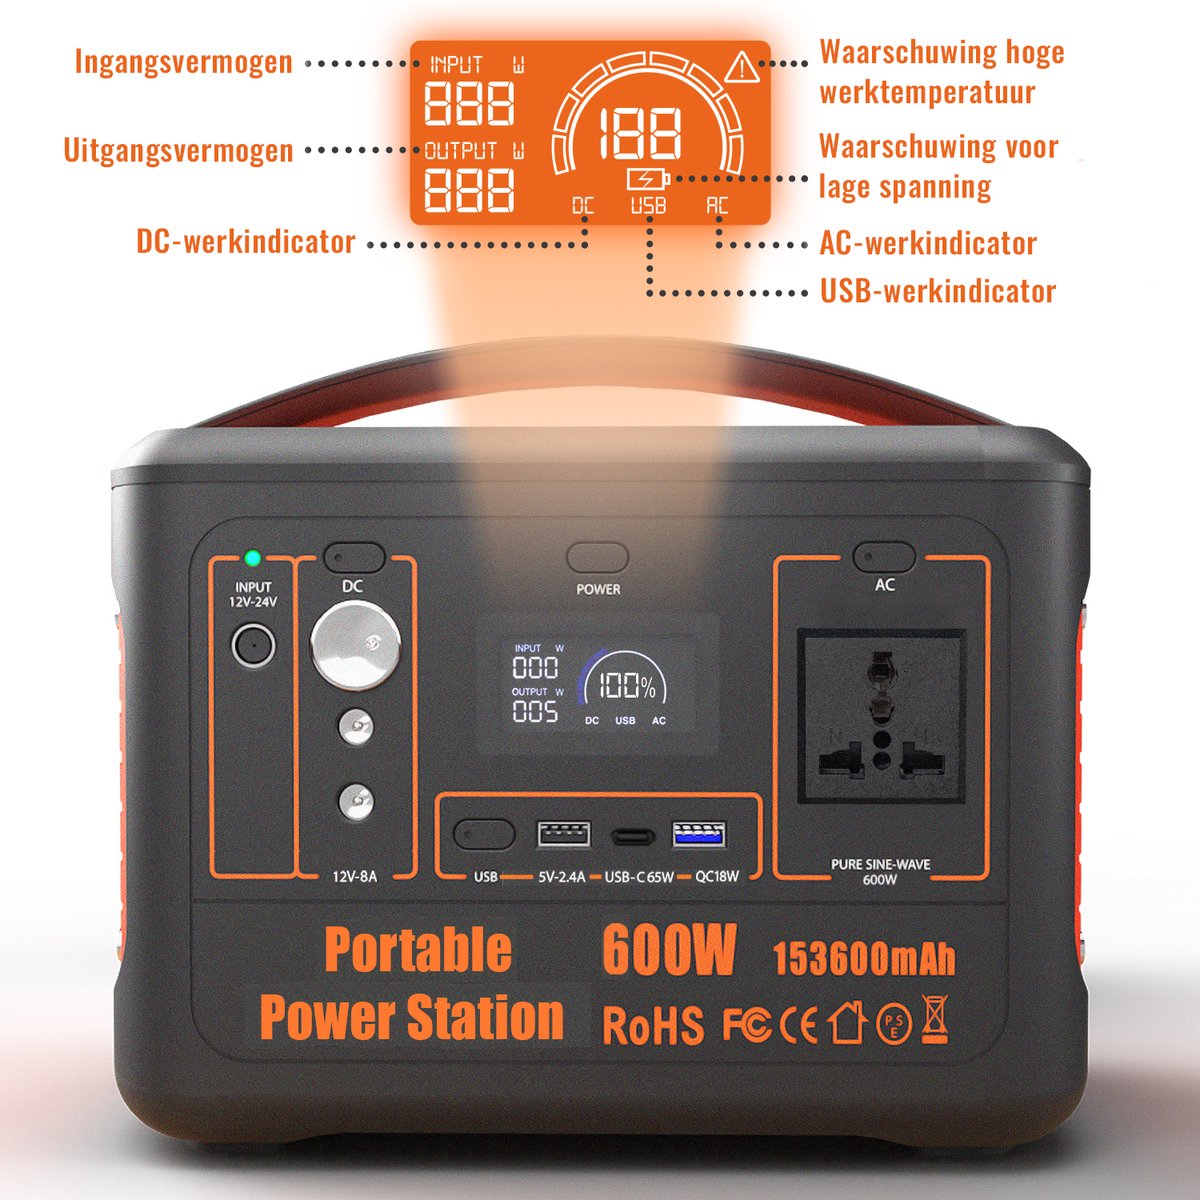 Centrale Power portable 600W - 568WH - 153600MAH - Peak 1000W - Batterie au  lithium